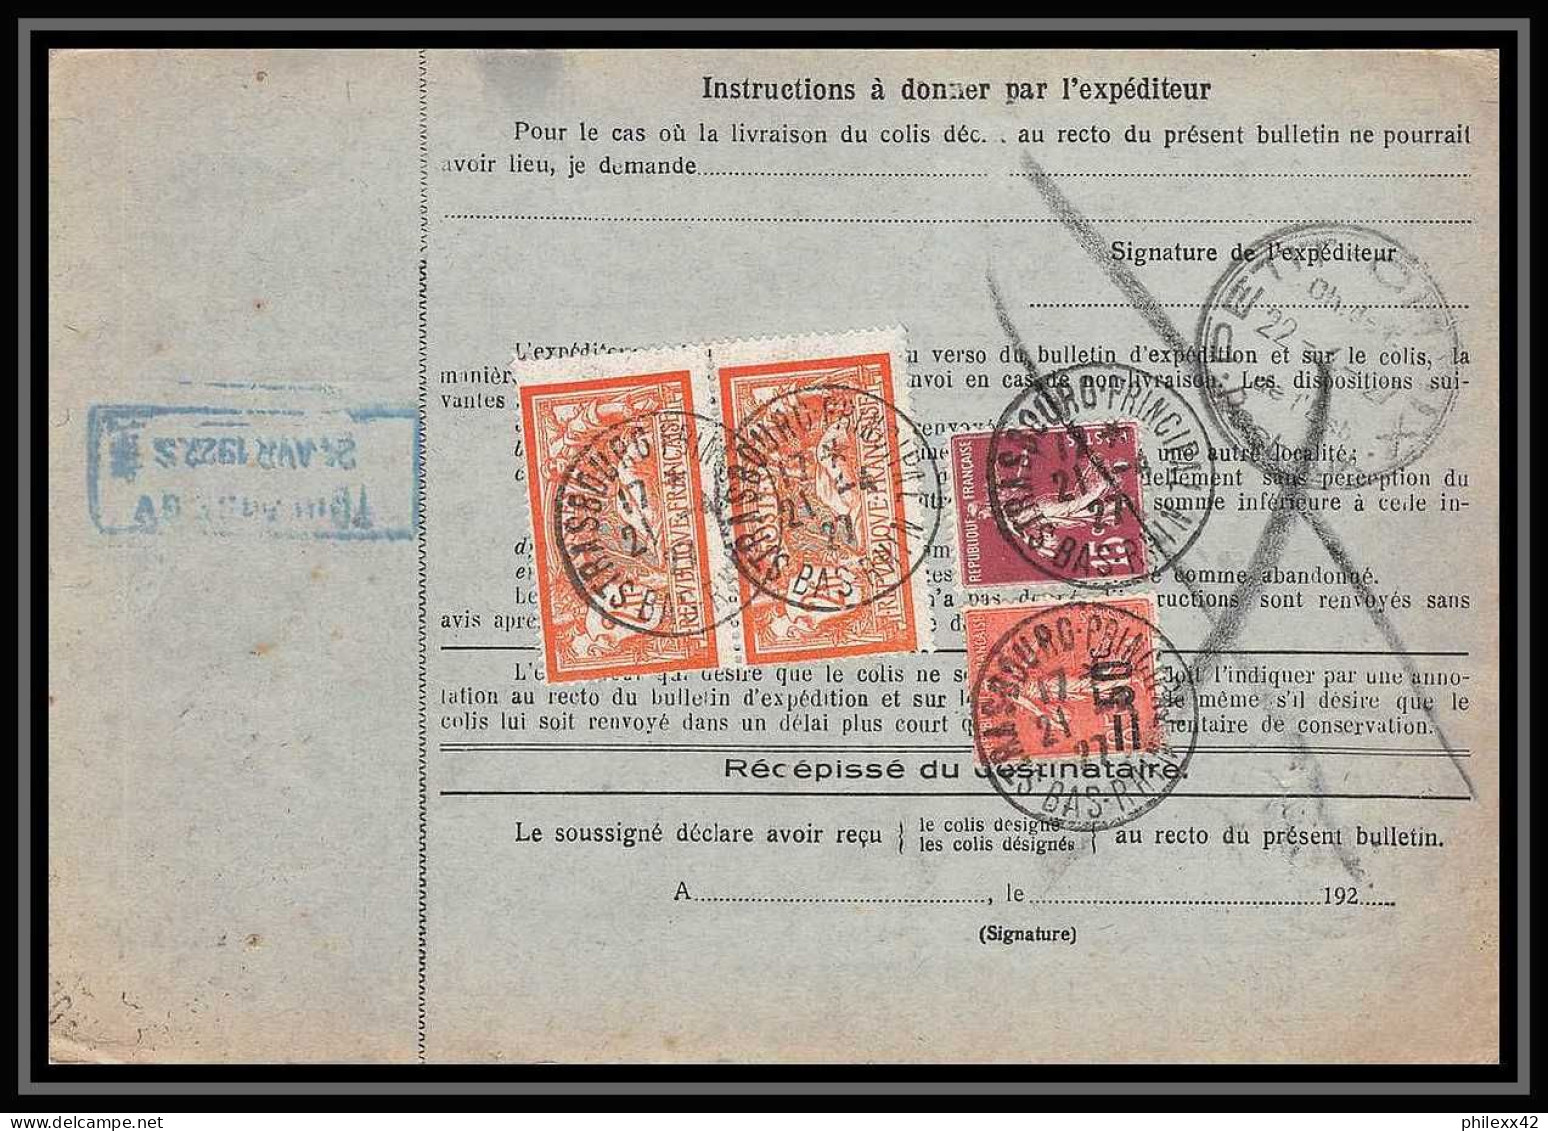 25007 Bulletin D'expédition France Colis Postaux Fiscal Haut Rhin 1927 Strasbourg Semeuse Merson 145 EN GARE - Storia Postale